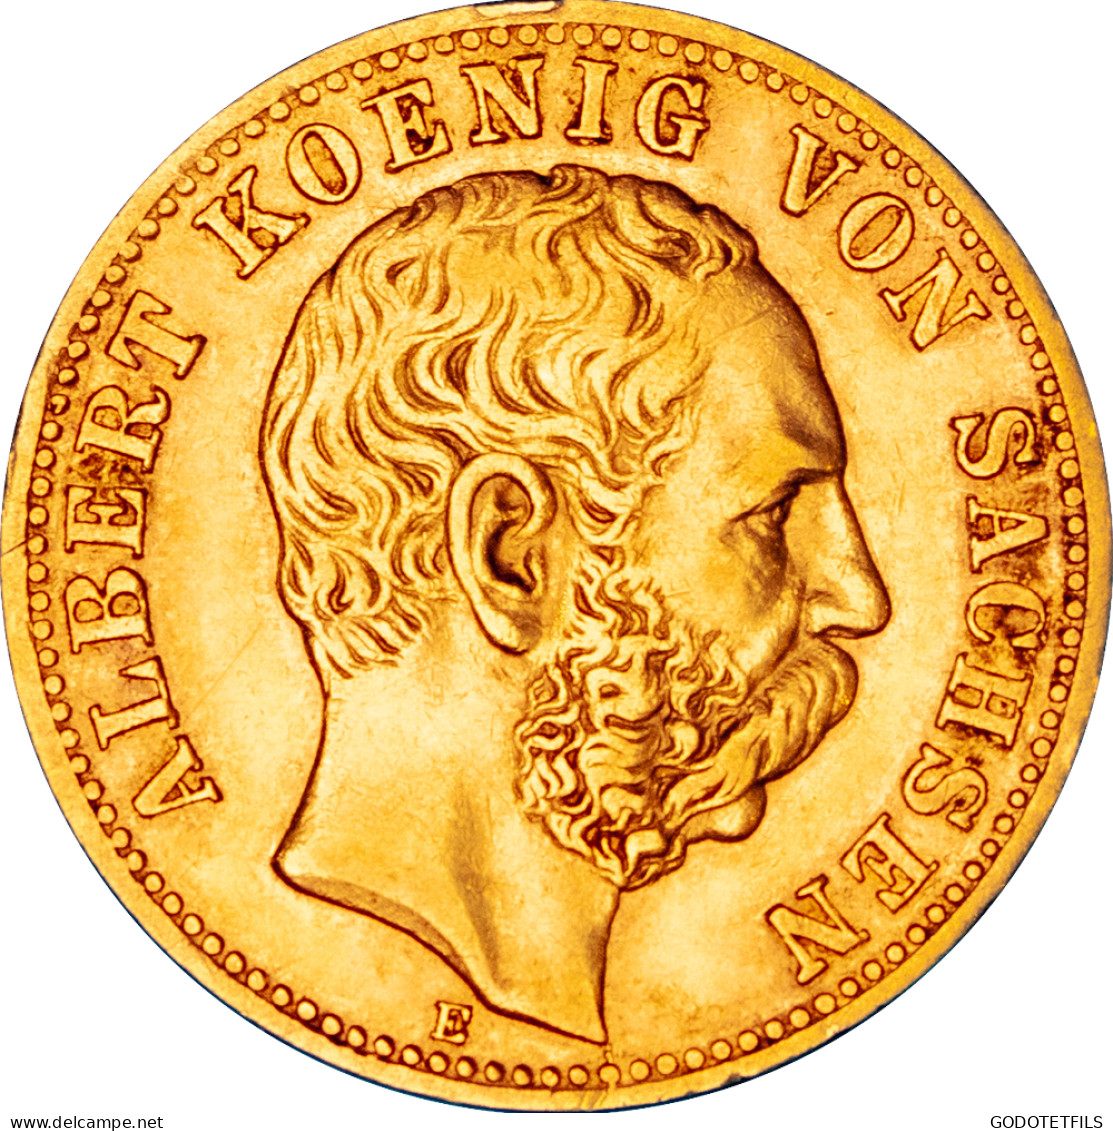 Royaume De Saxe - 10 Mark Albert - 1881 Dresde - 5, 10 & 20 Mark Or